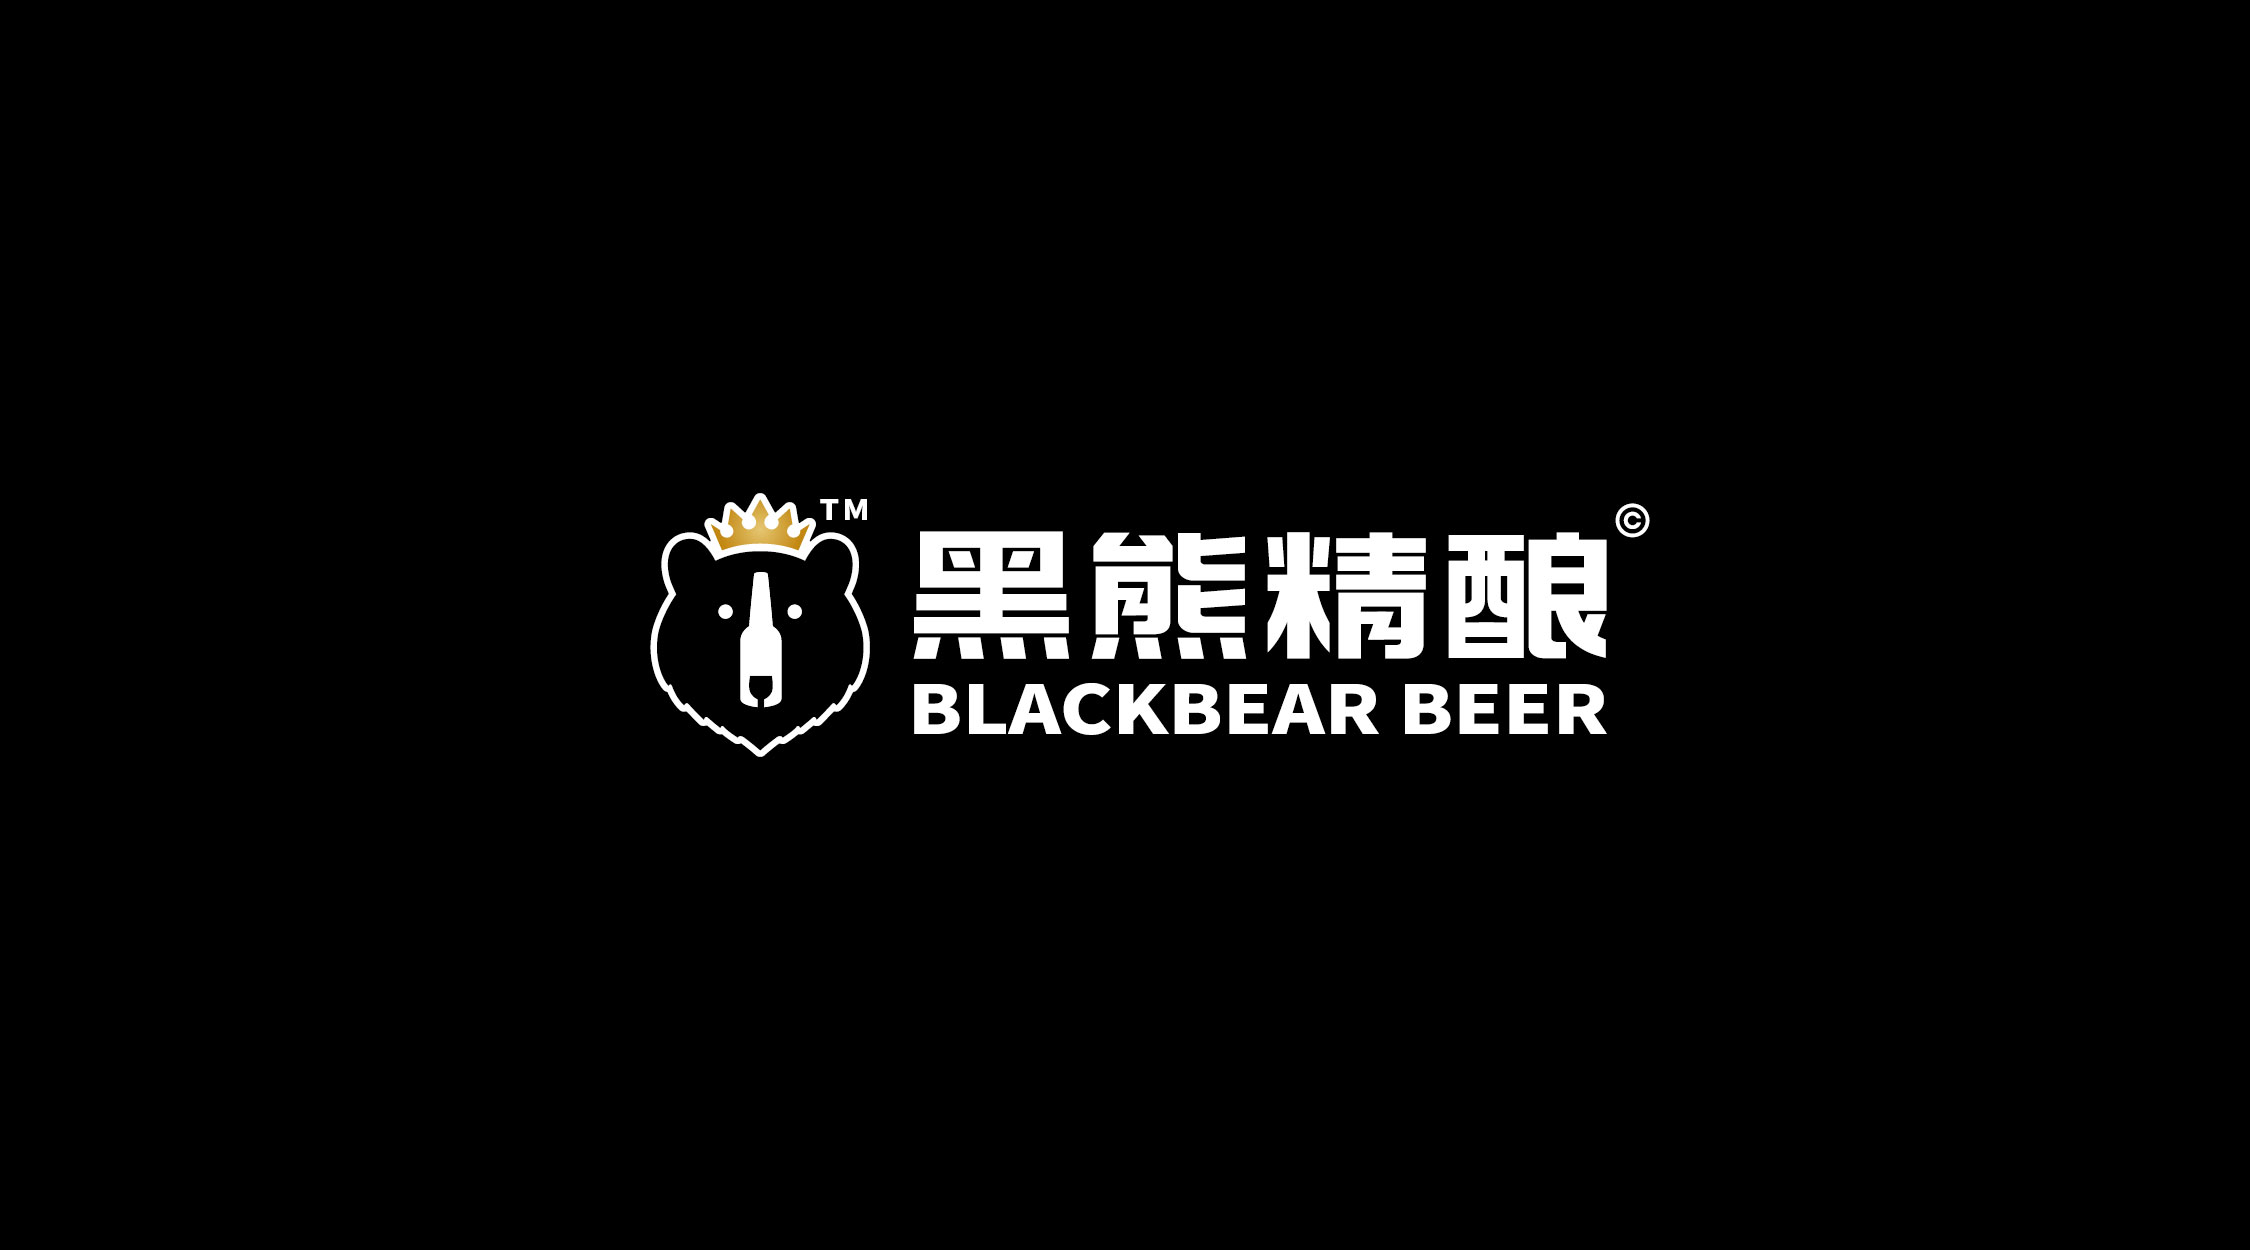 创意共和设计公司提供品牌和包装设计的黑熊啤酒现已上市